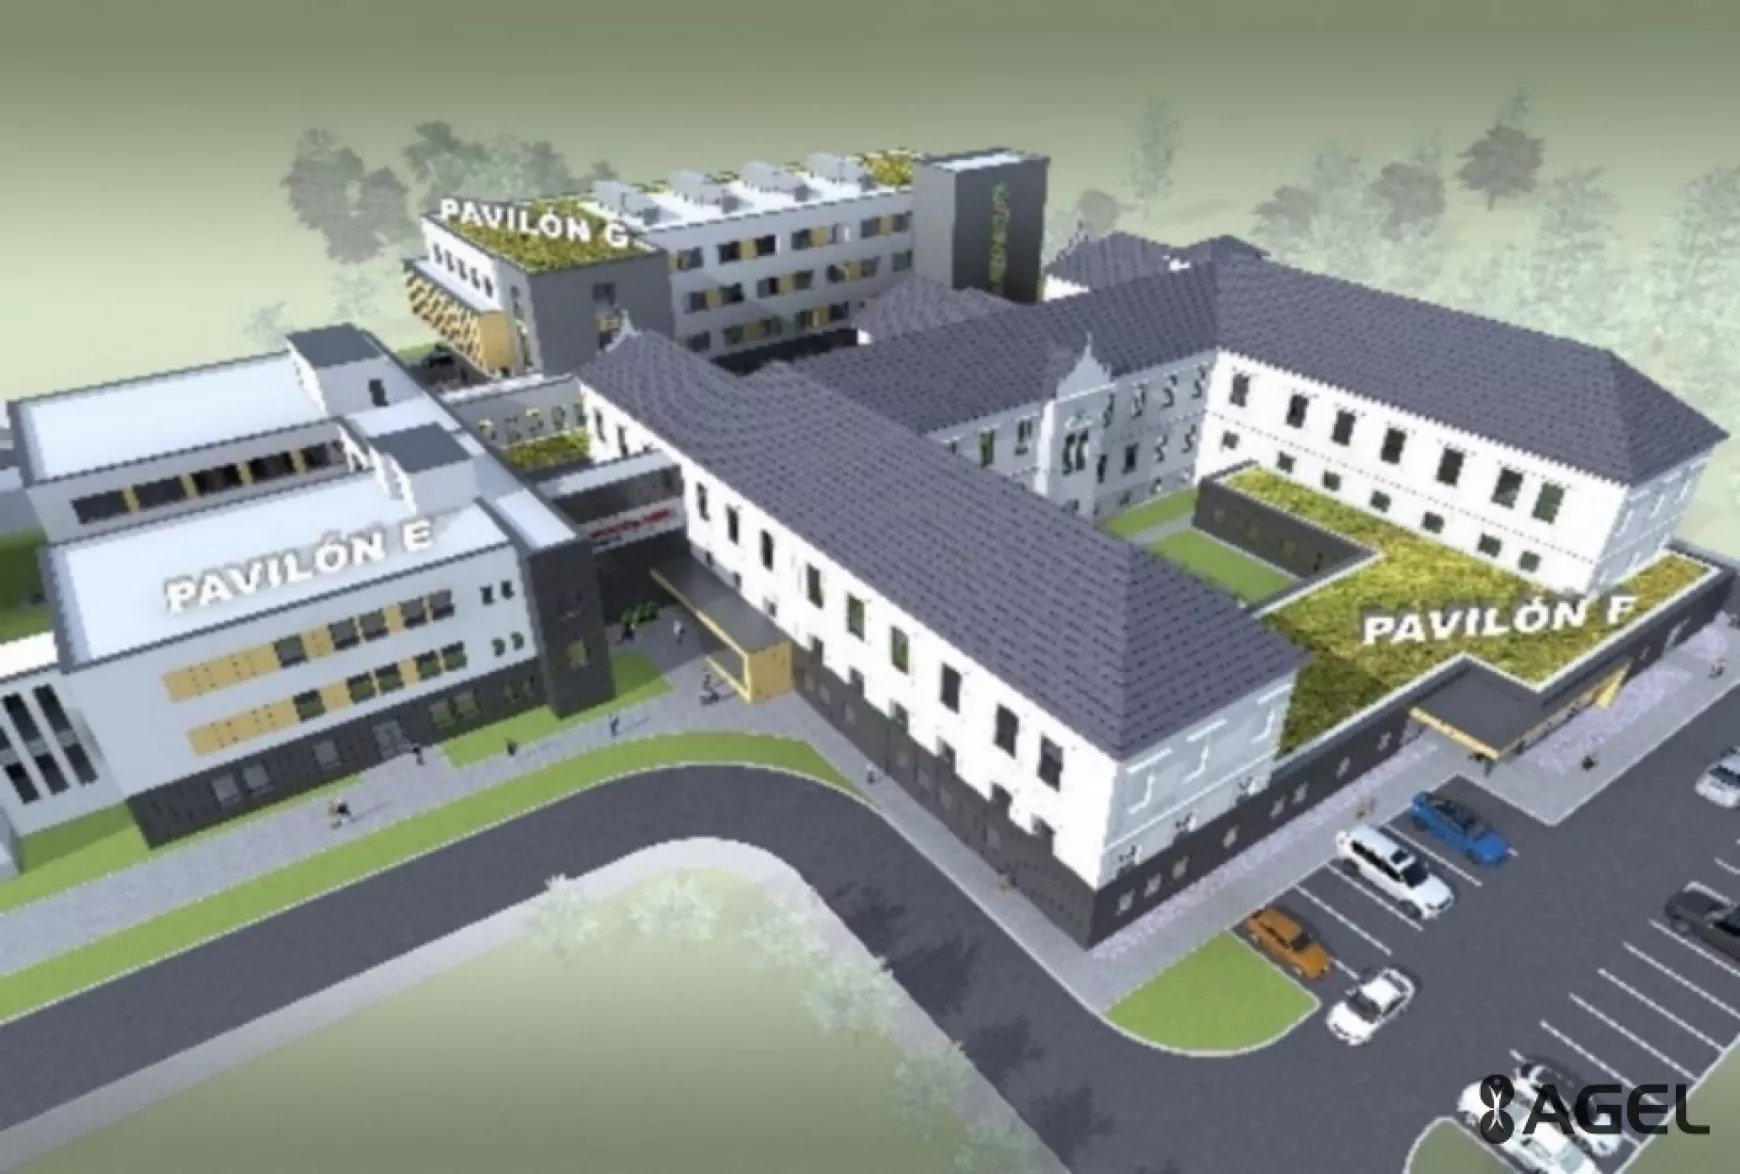  Pozitív változásokat eredményező fejlesztési tervek a komáromi kórházban